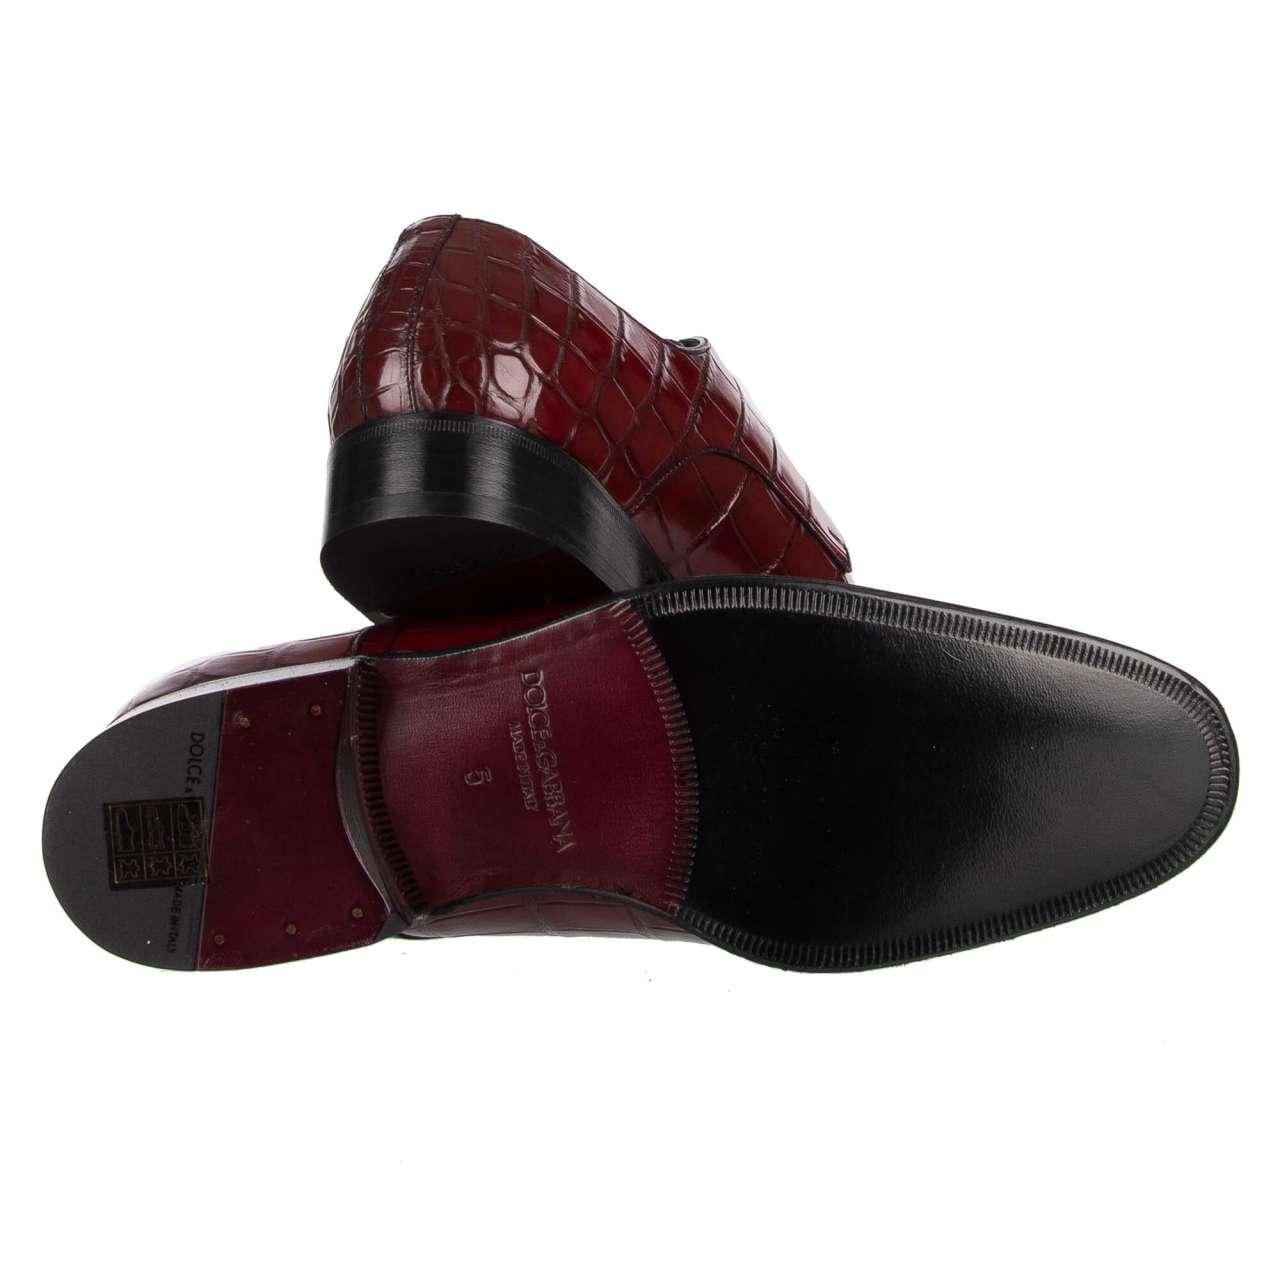 Dolce & Gabbana Crocodile Leather Derby Shoes VENEZIA Bordeaux Red EUR 39 For Sale 2